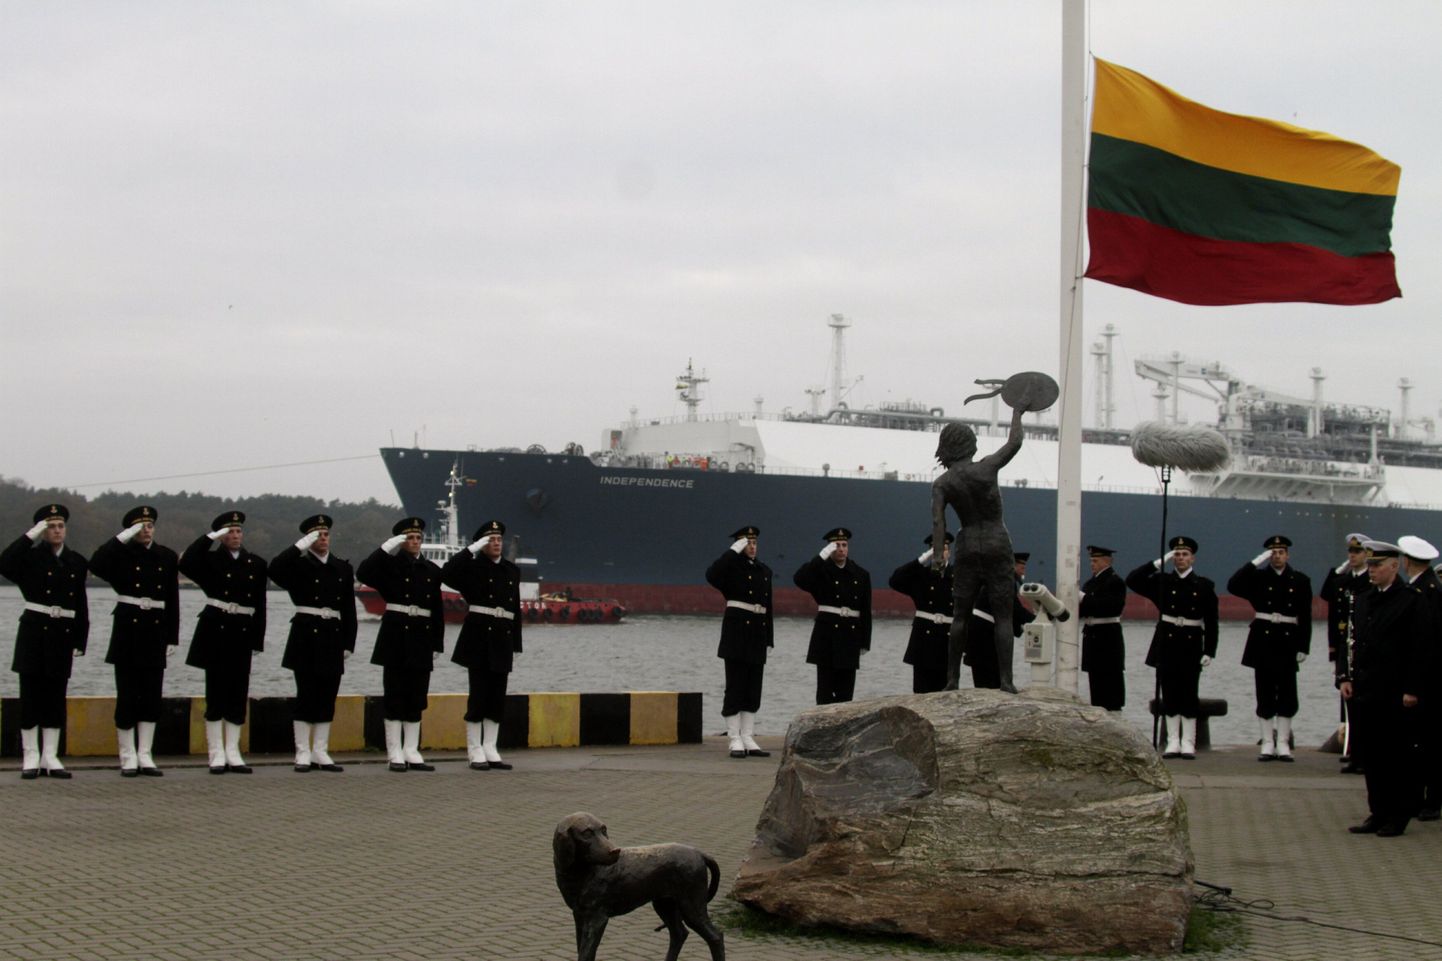 Leedu mereväelased tervitavad Klaipeda sadamas saabunud ujuvat LNG terminali Independence.